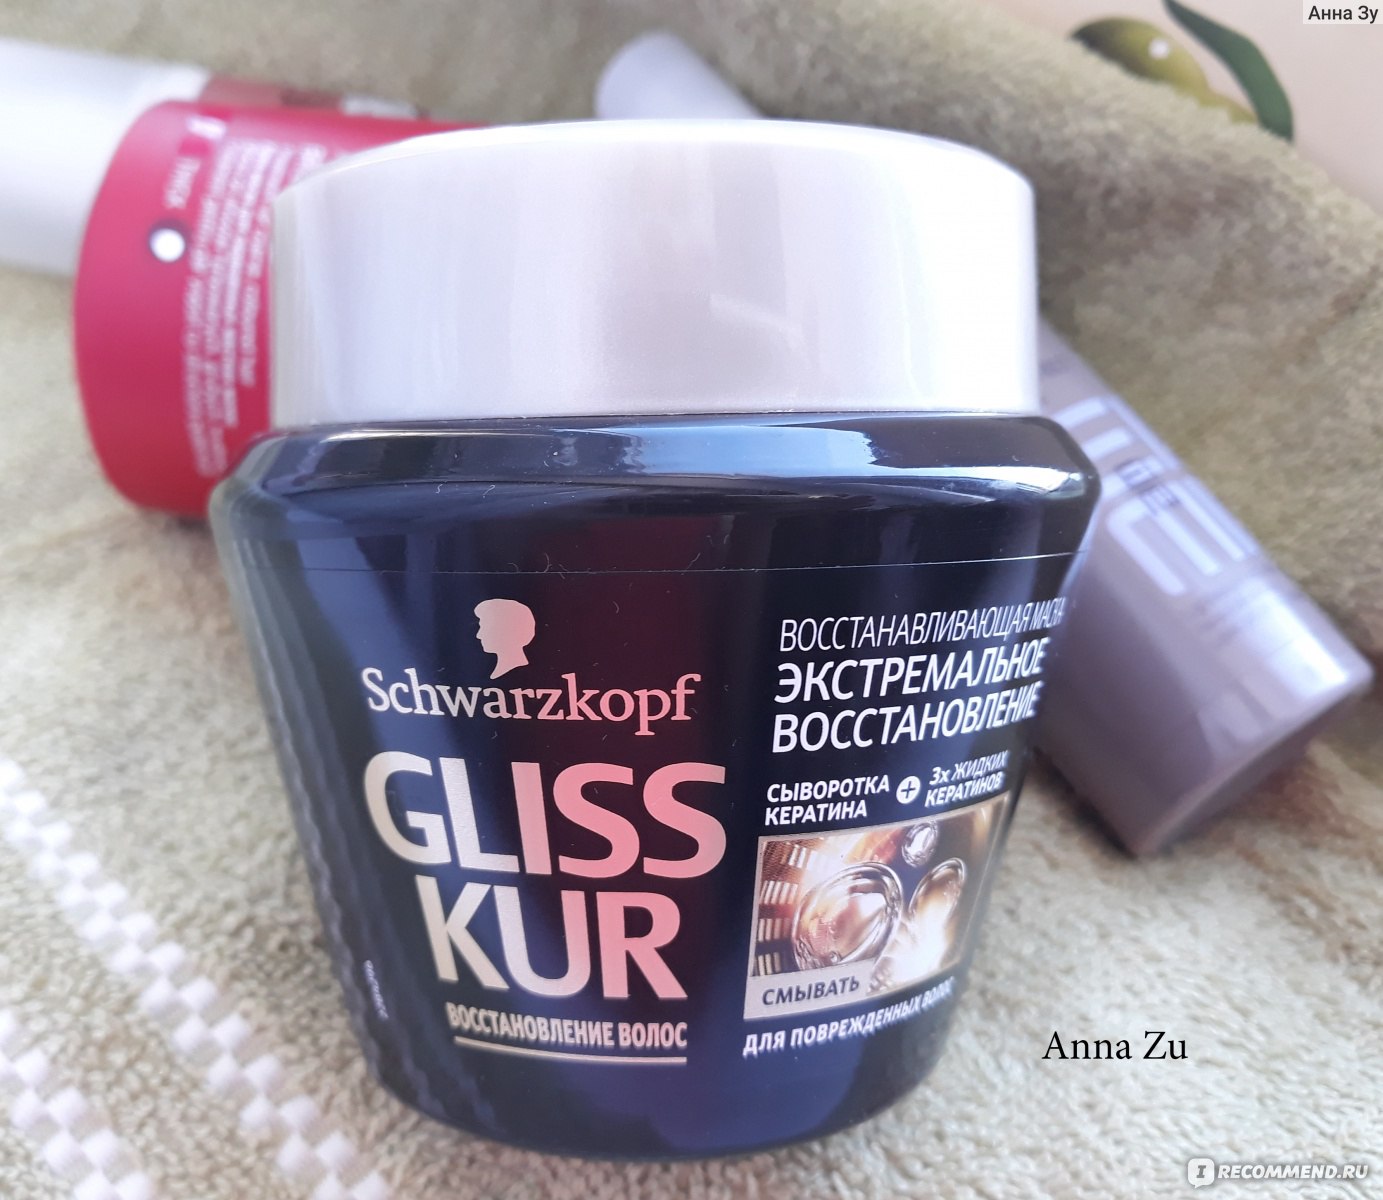 Маска для волос schwarzkopf gliss kur экстремальное восстановление